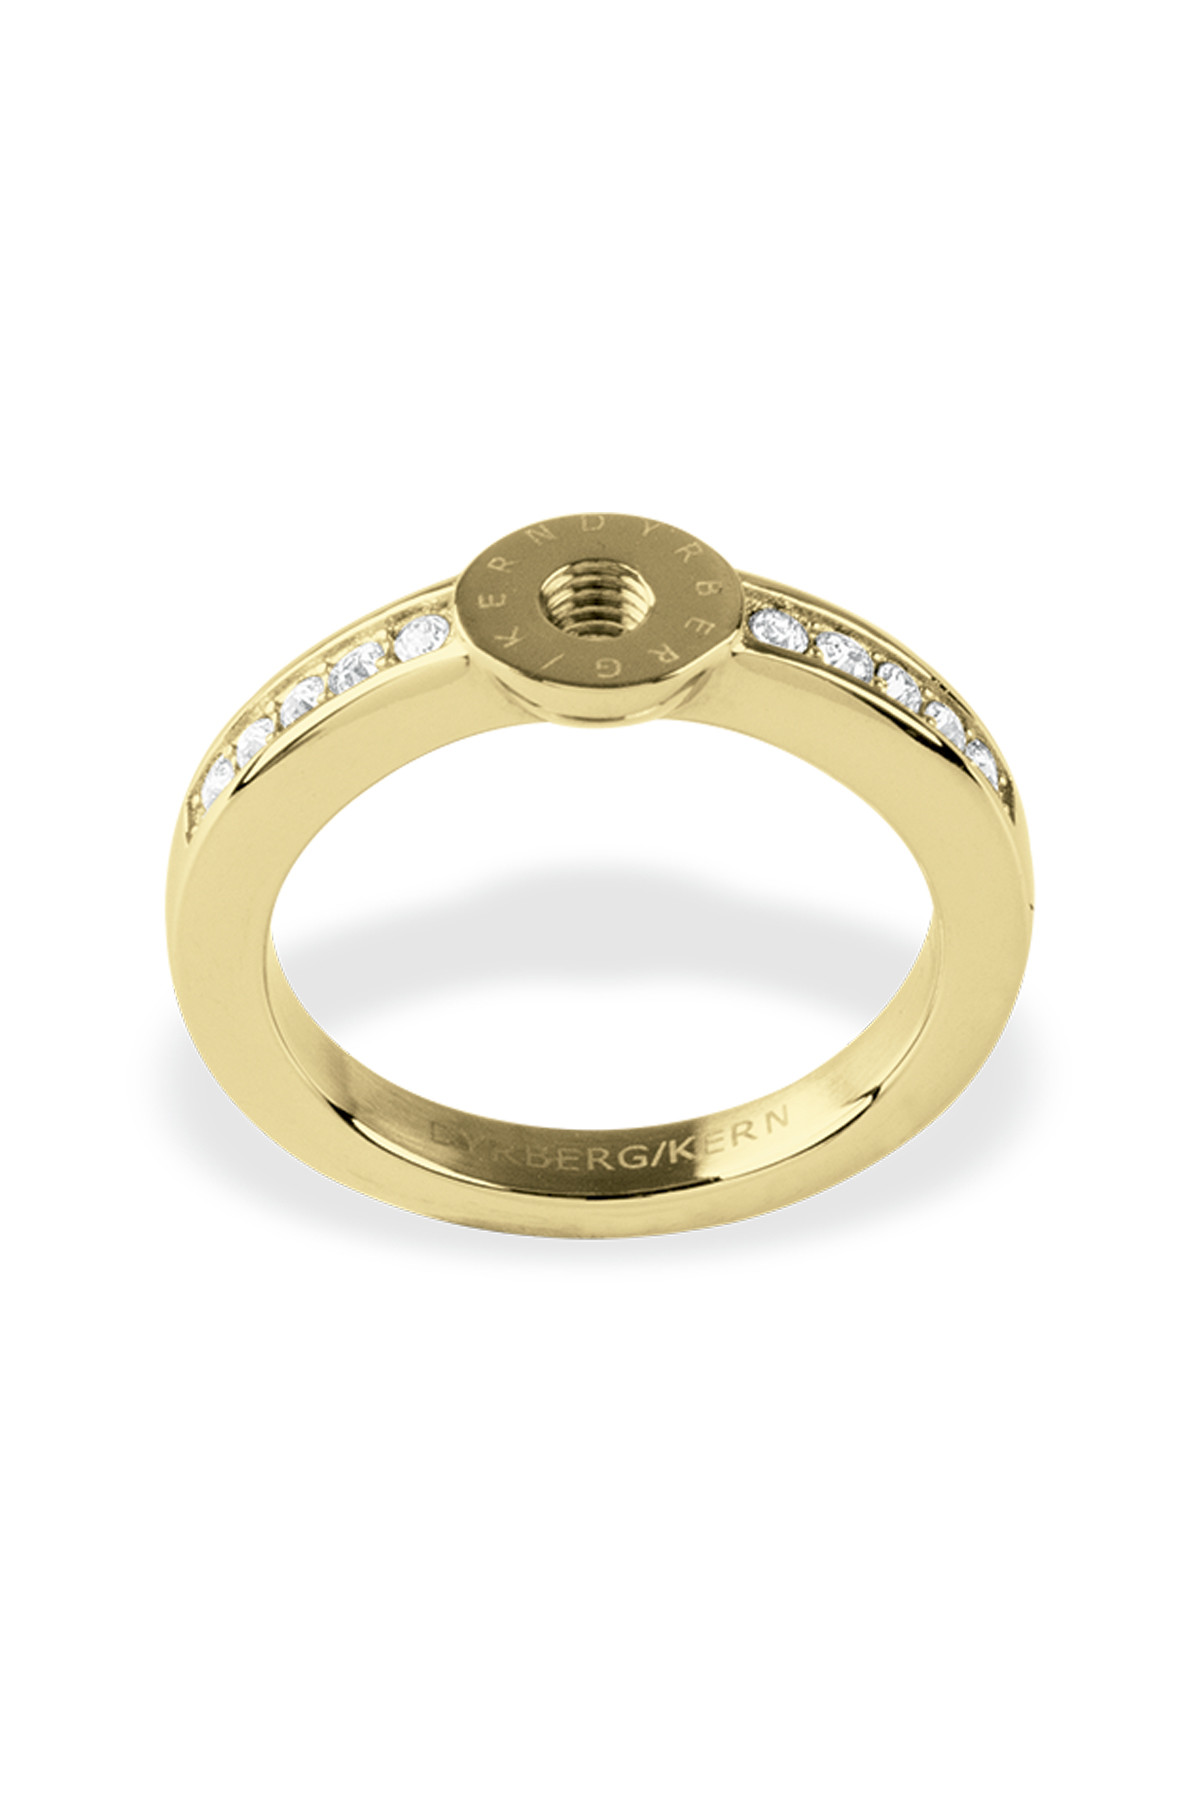 Billede af Dyrberg/Kern Ring Ring, Color: Gold/Crystal, Iiii/, Women